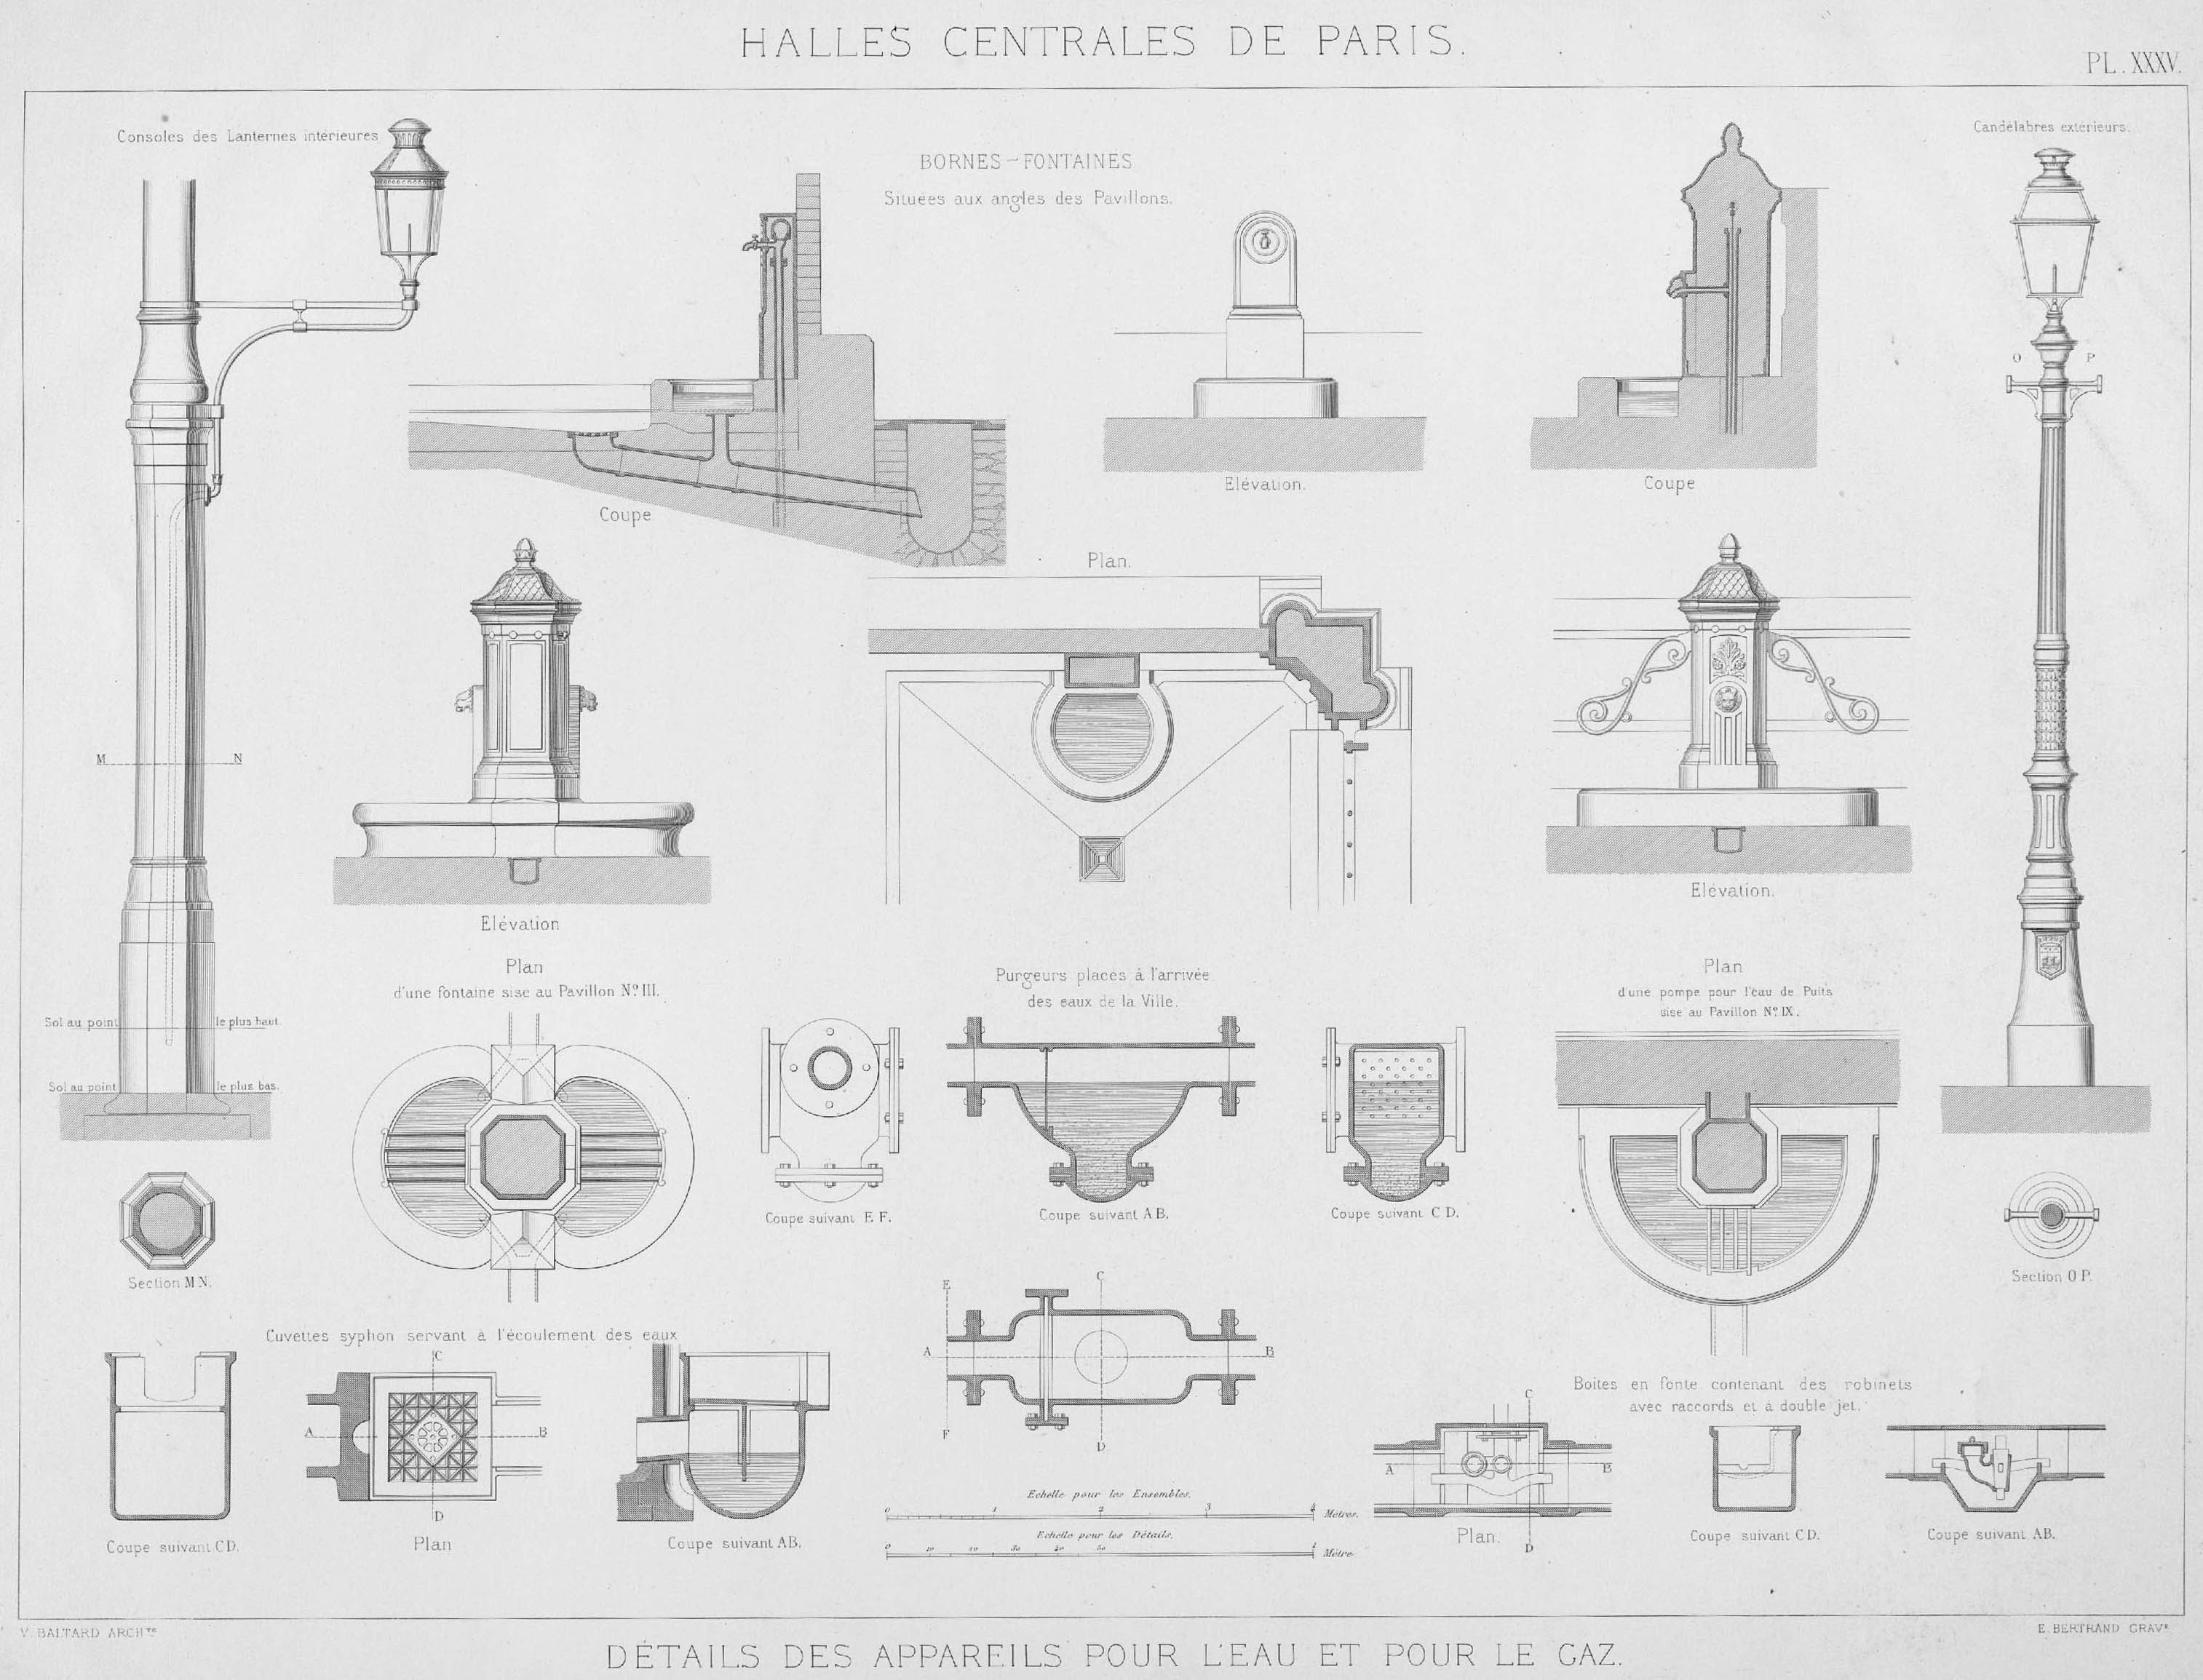 Détails des appareils pour l’eau et pour le gaz © Cité de l'architecture & du patrimoine/Musée des Monuments français